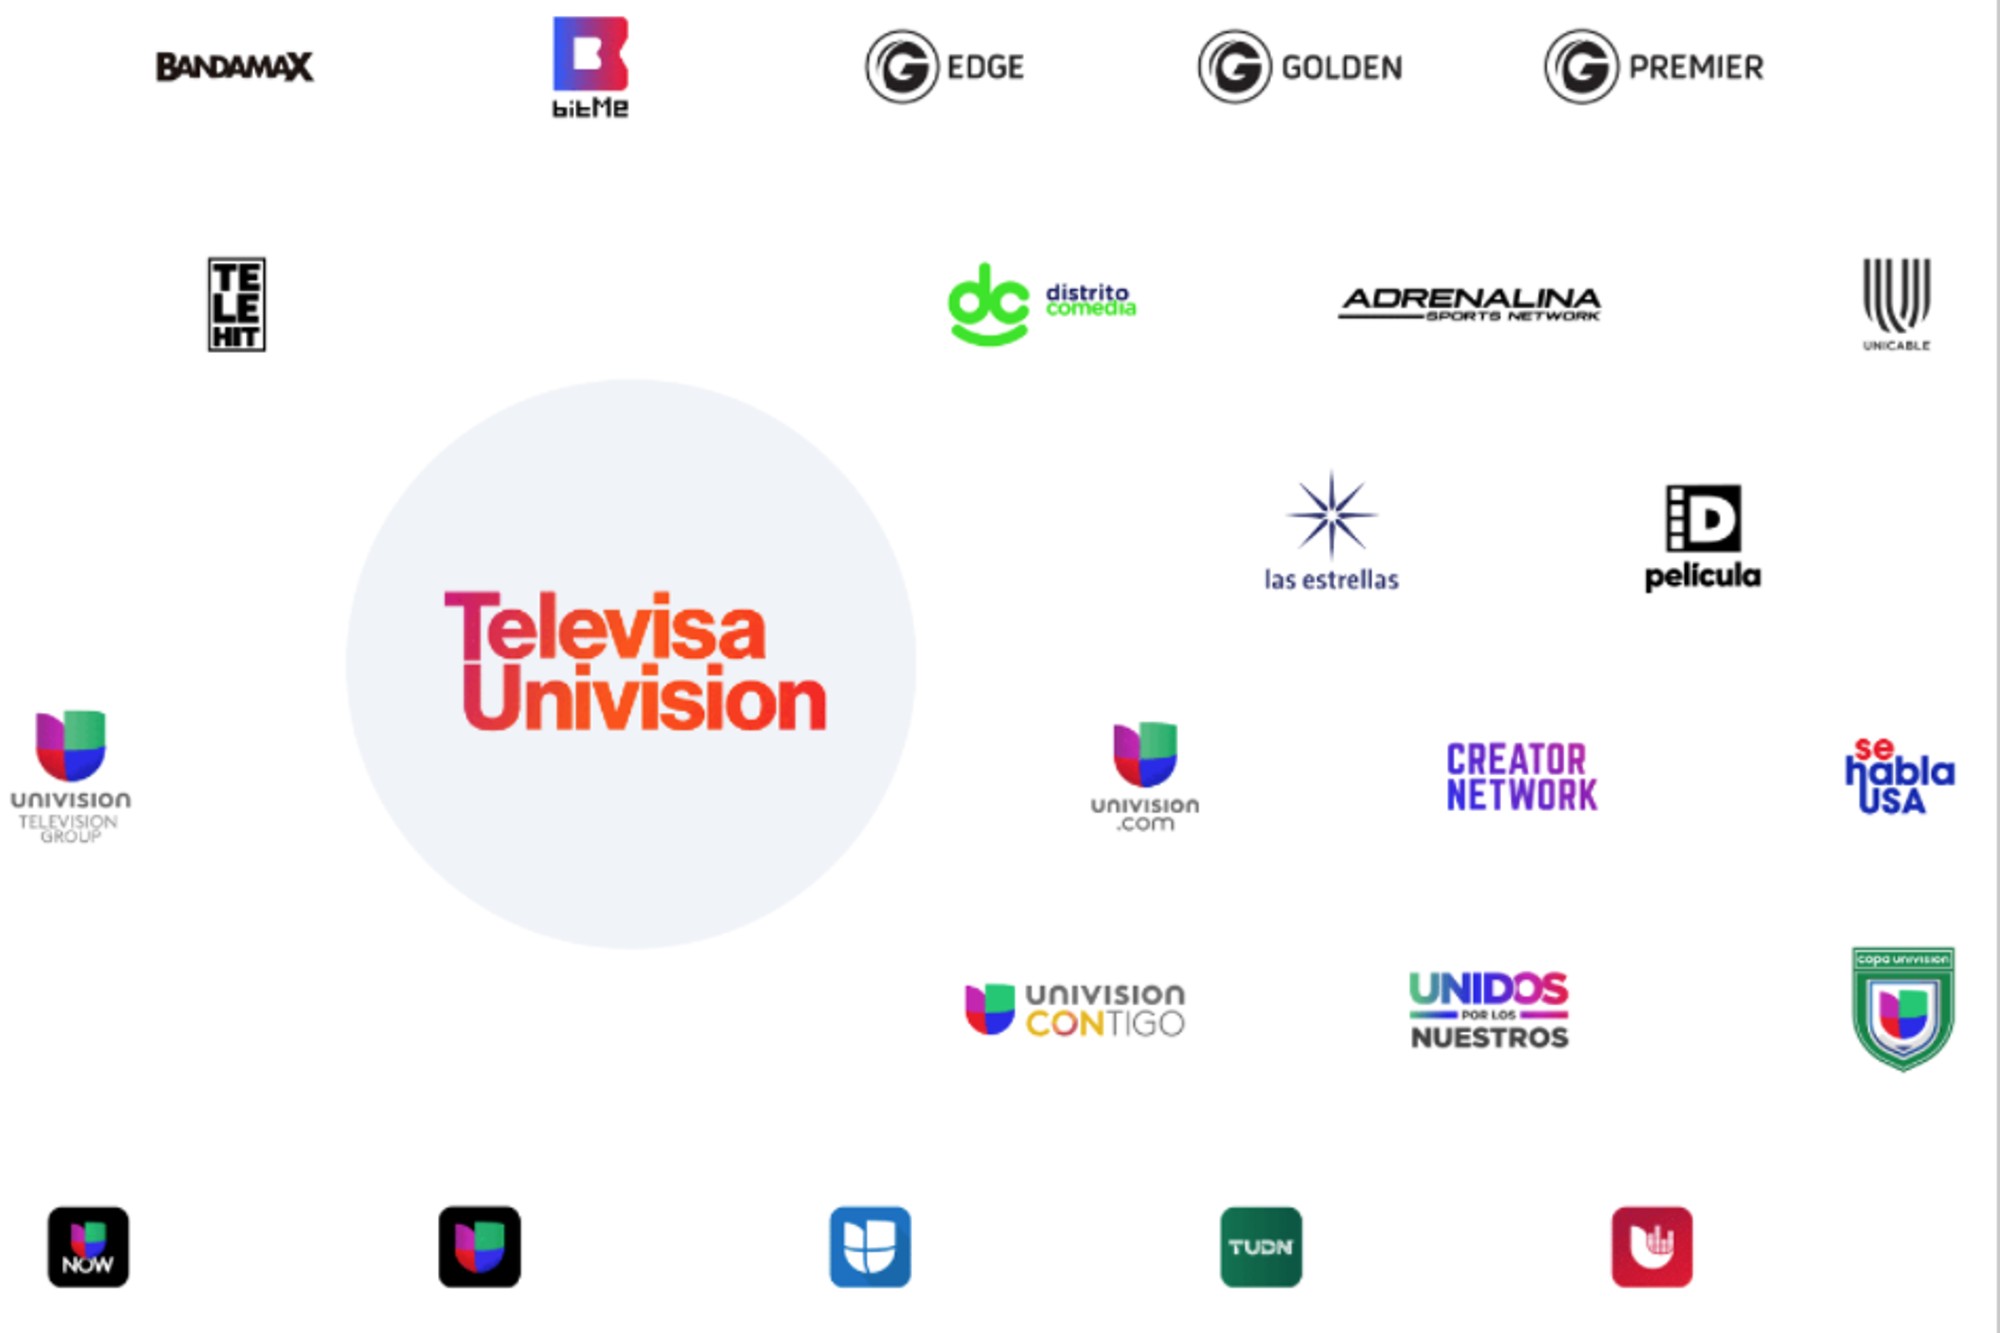 TelevisaUnivision: El Universo de Contenidos en Español